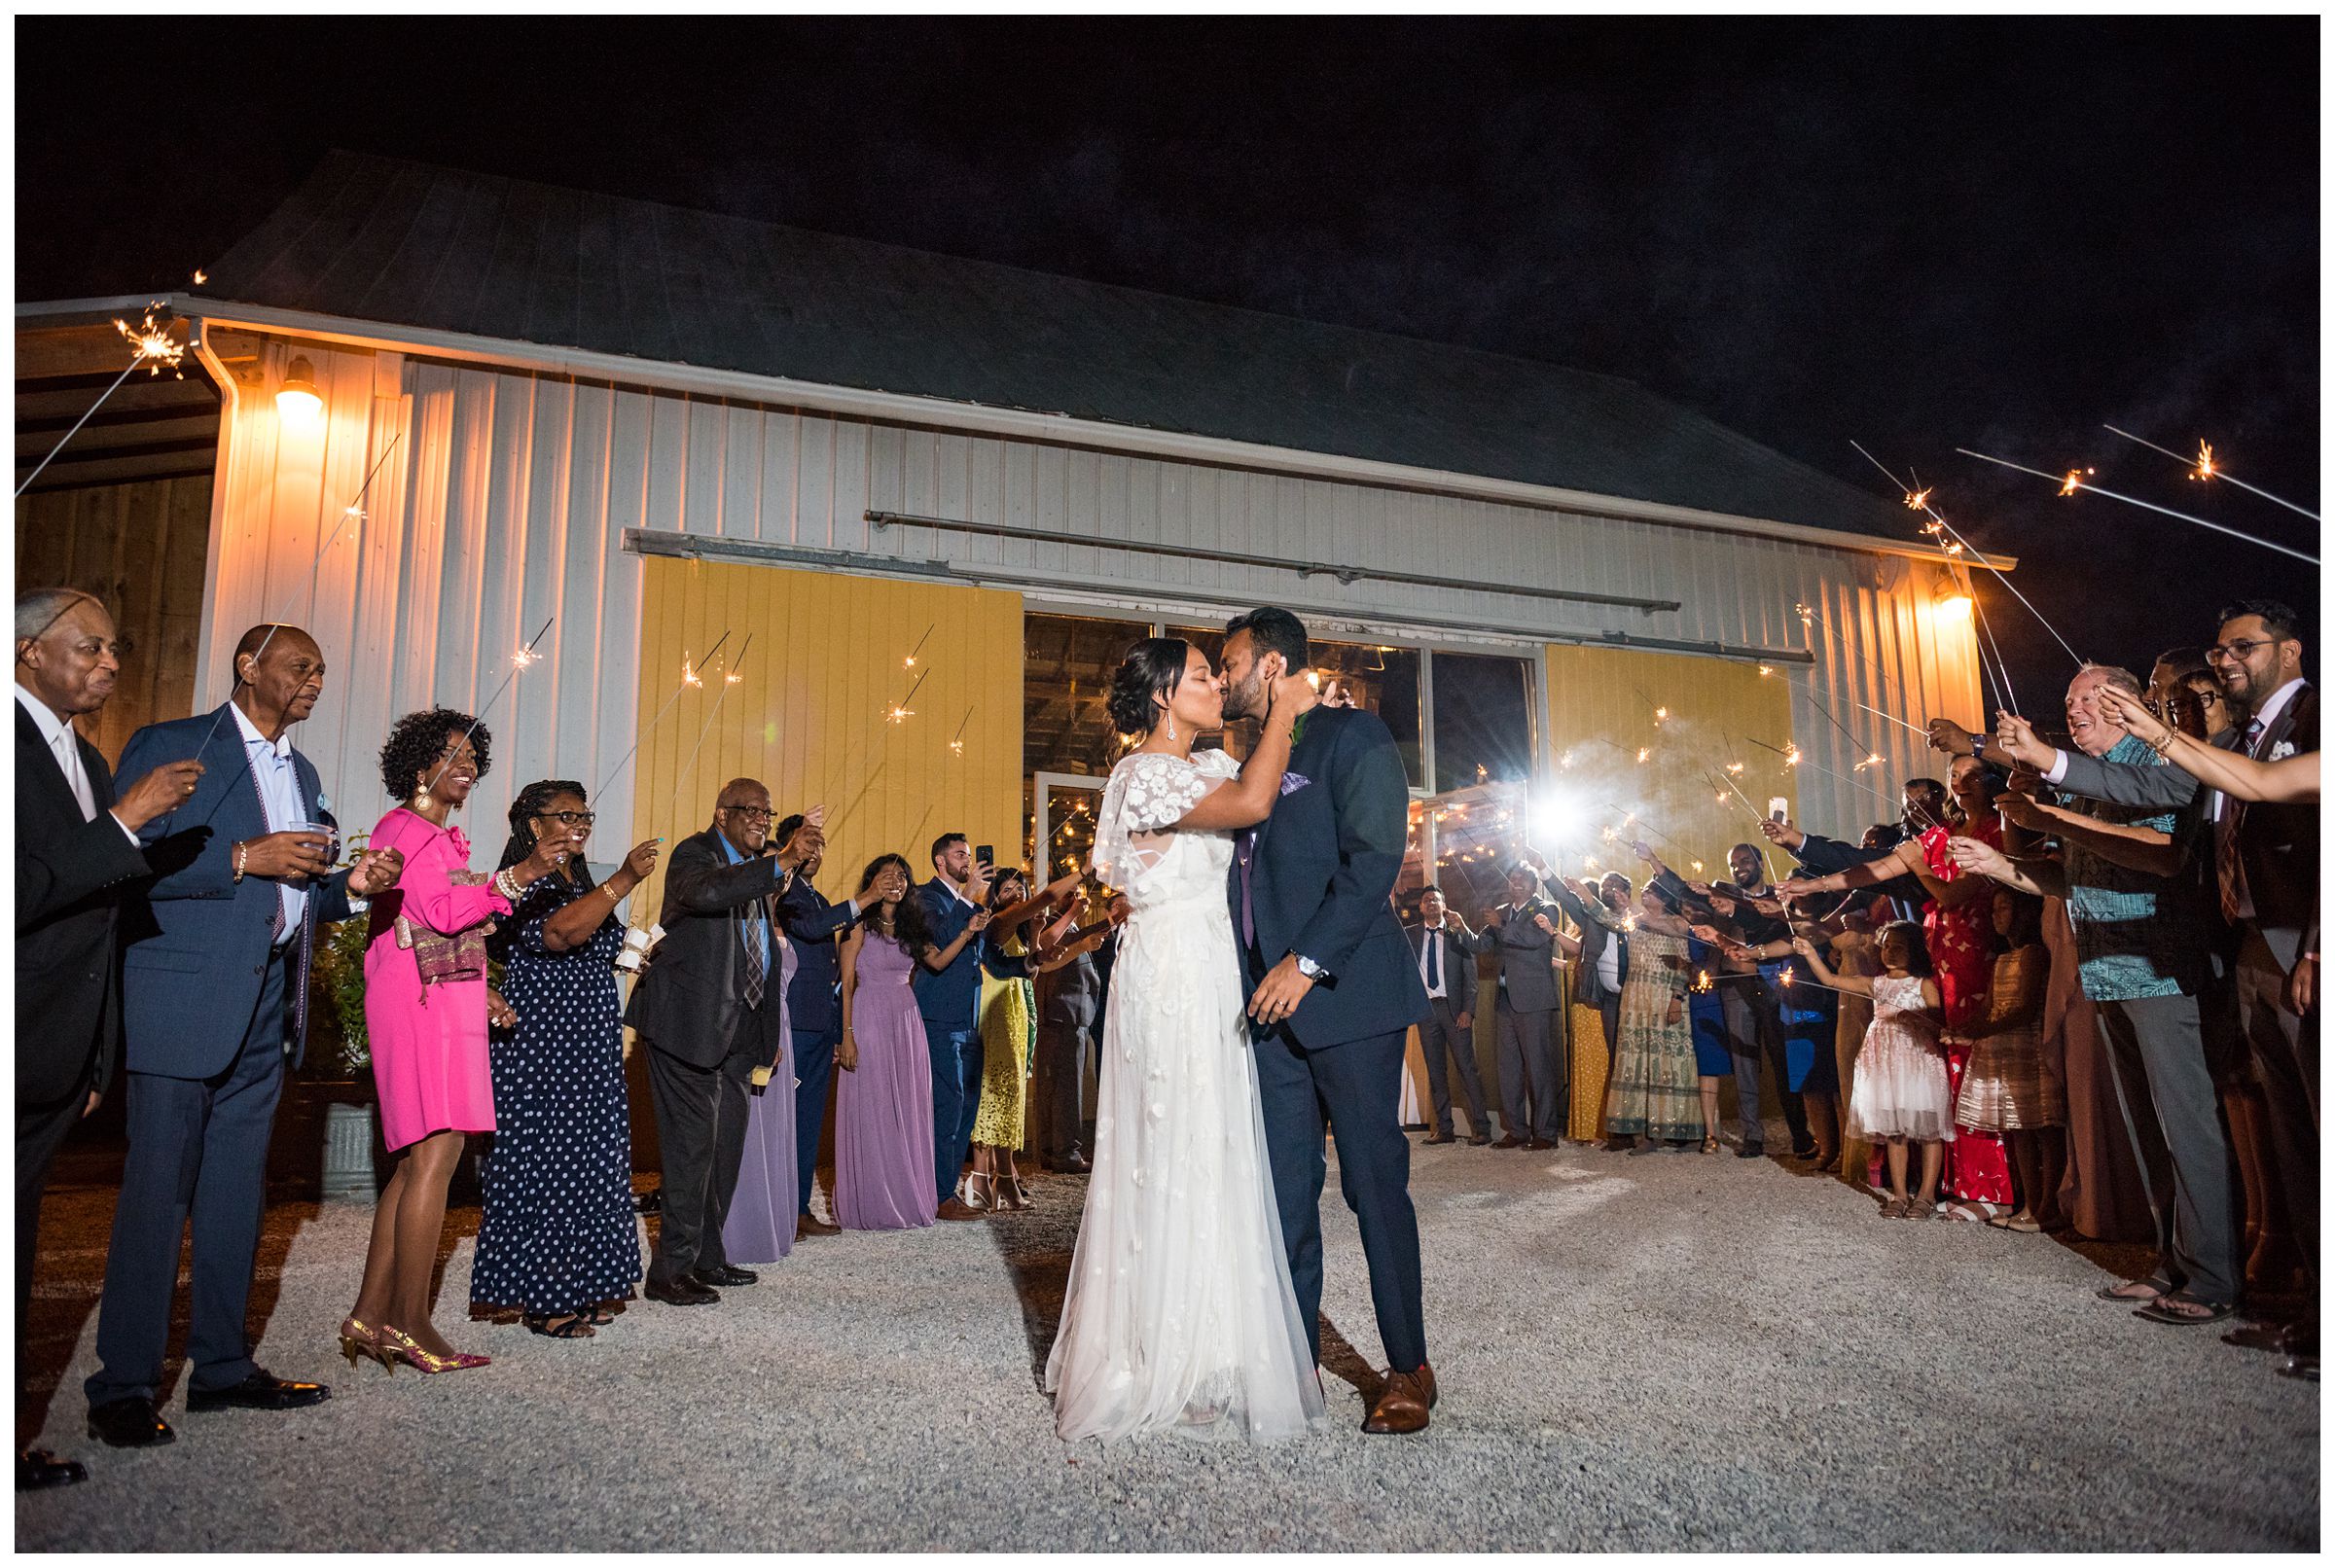 sparkler wedding reception exit at historic barn at Jorgensen Farms